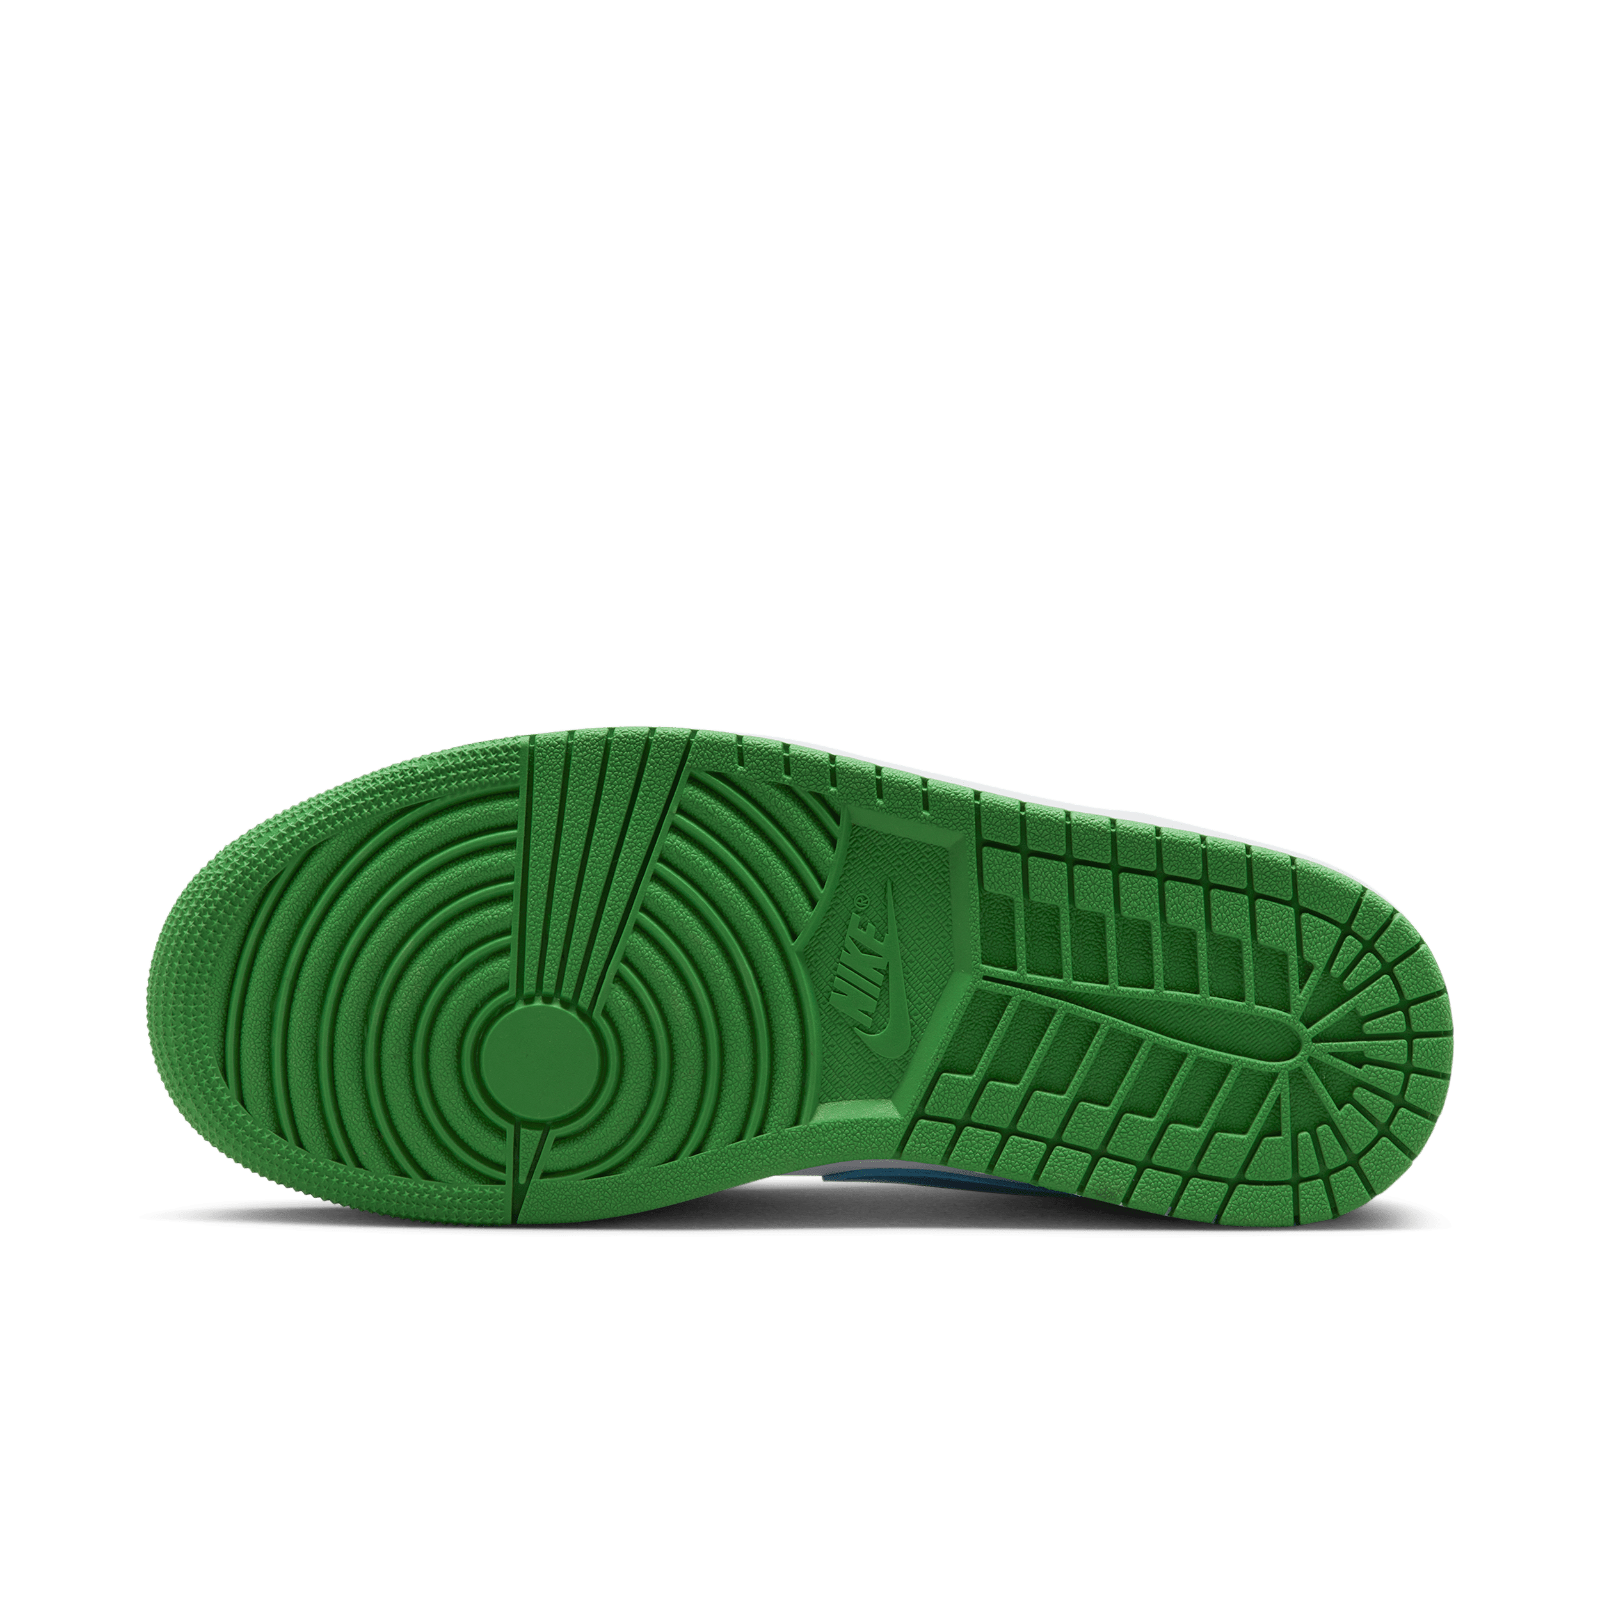 New in Box Nike Air Jordan 1 Retro High OG Gorge Green DZ5485-303 Men's  size 9.5